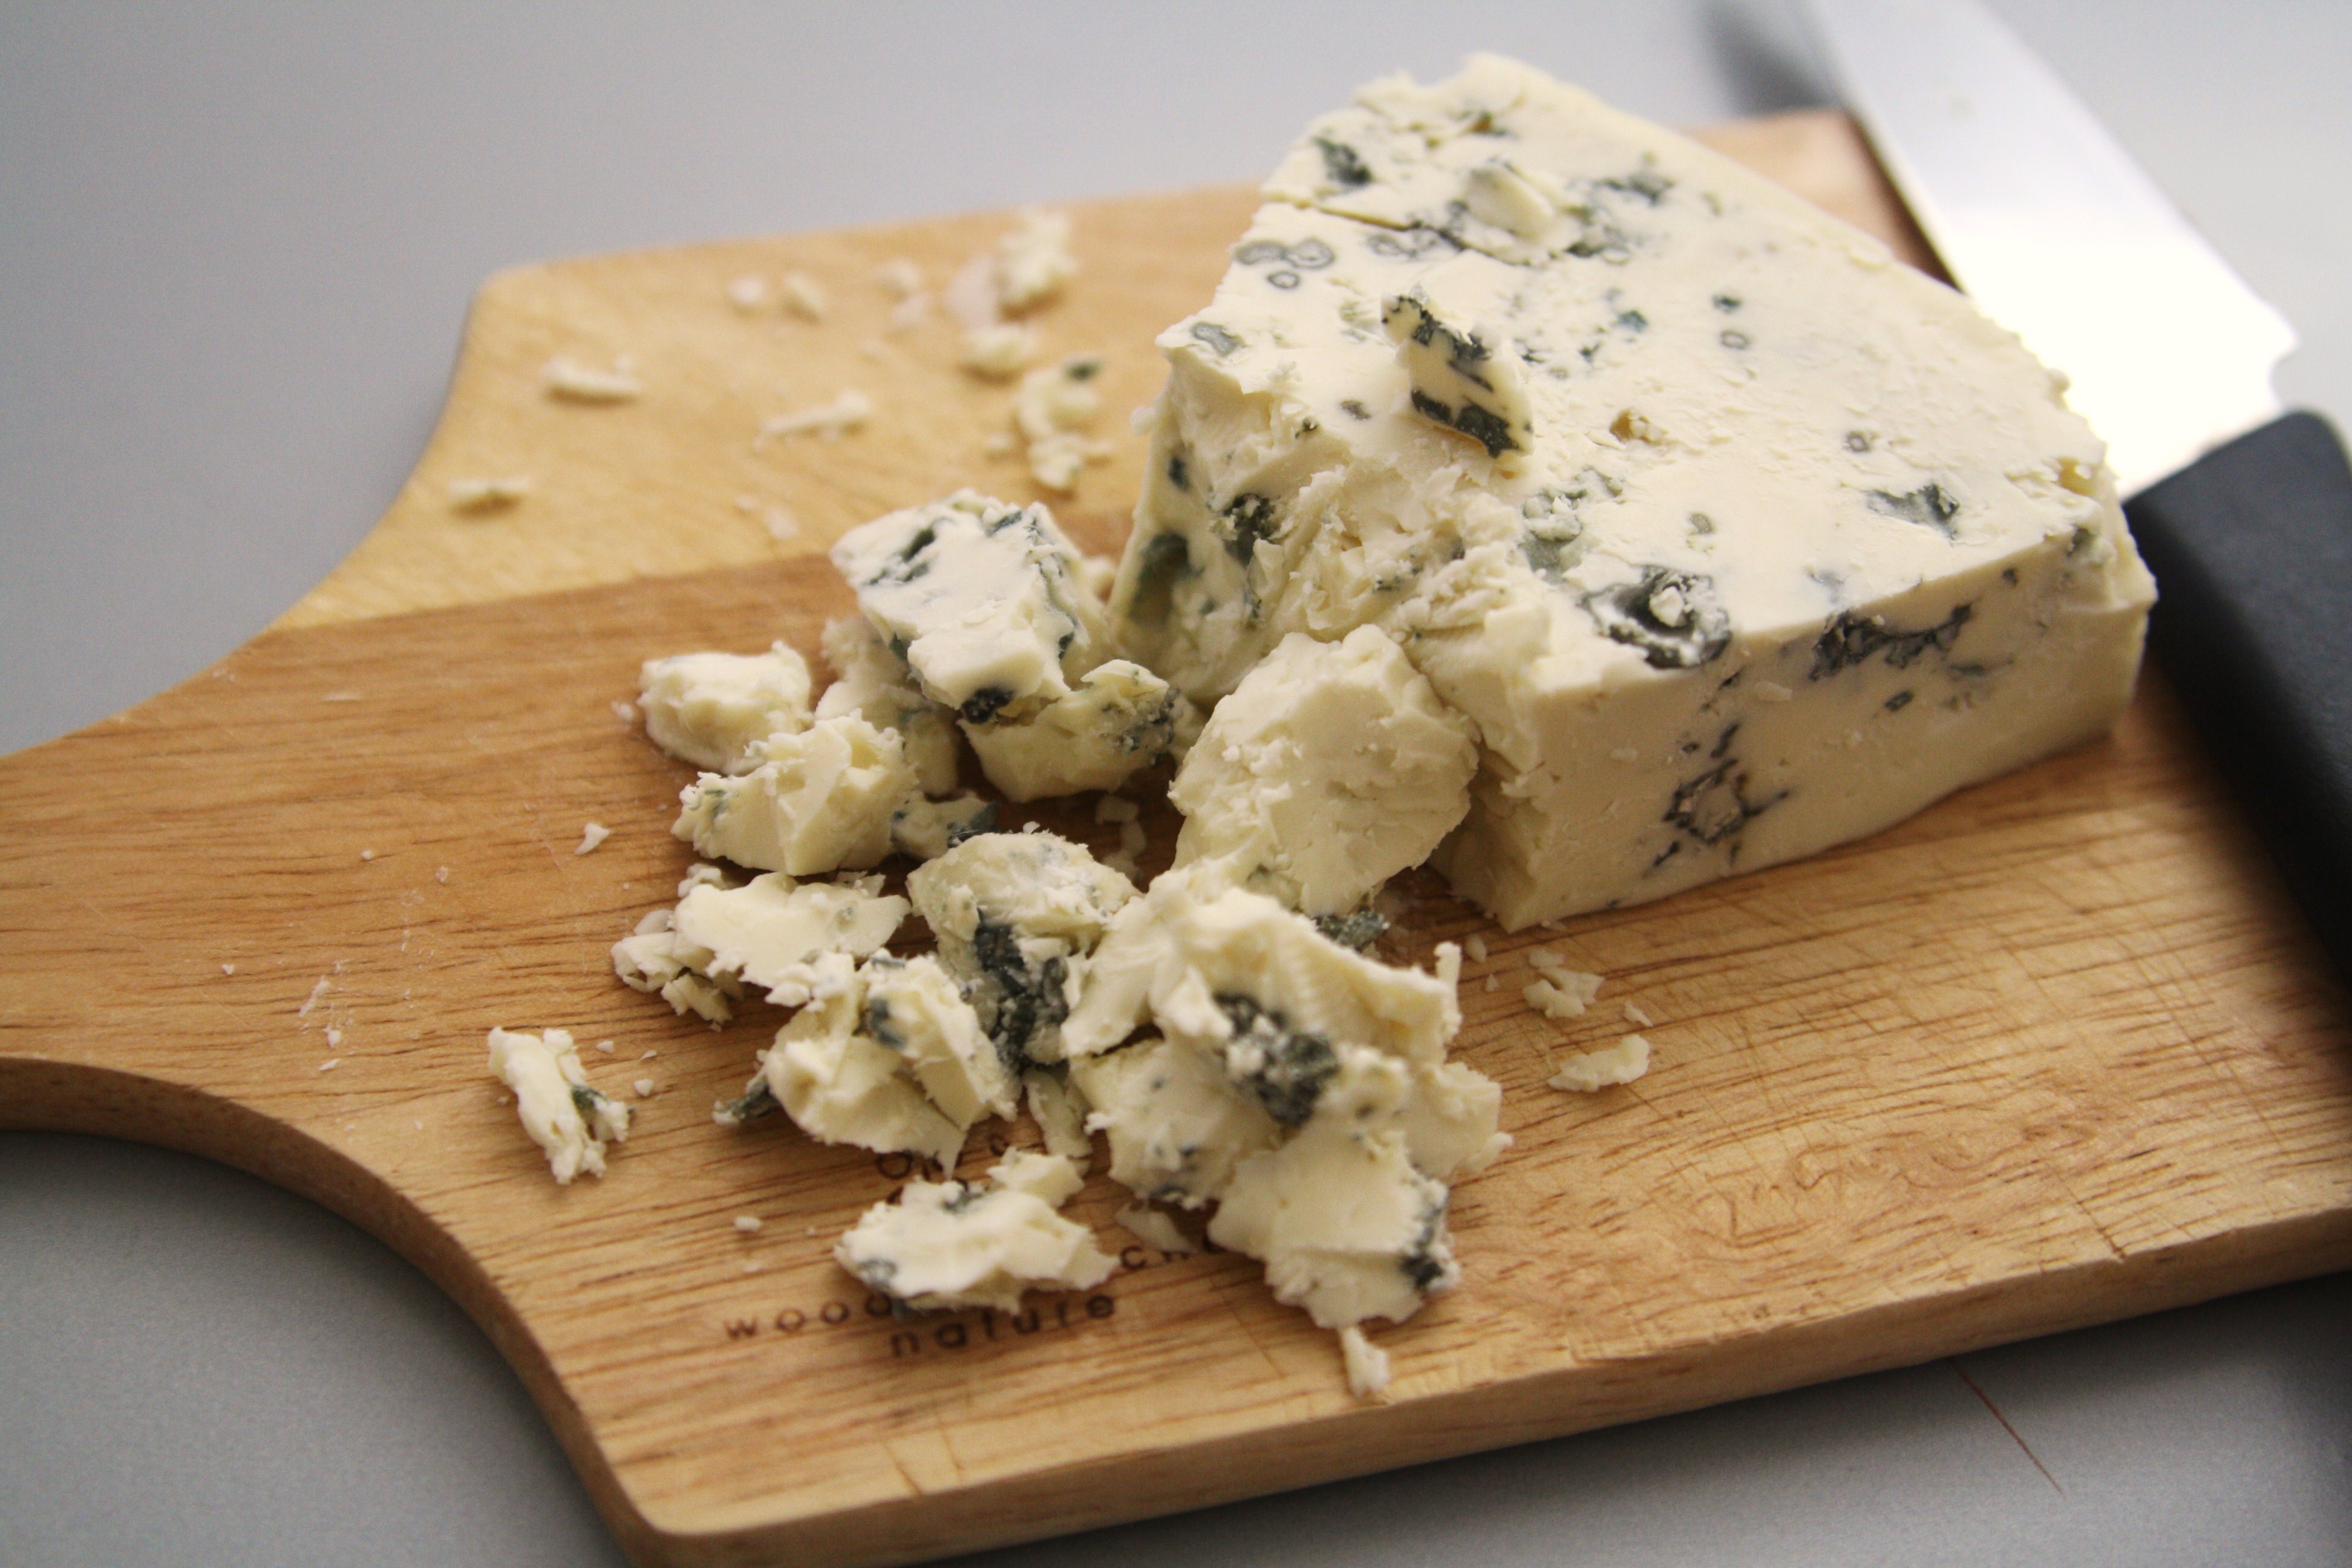 Сыр бри - польза и вред, калорийность мягкого французского сыра с белой плесенью; его производство